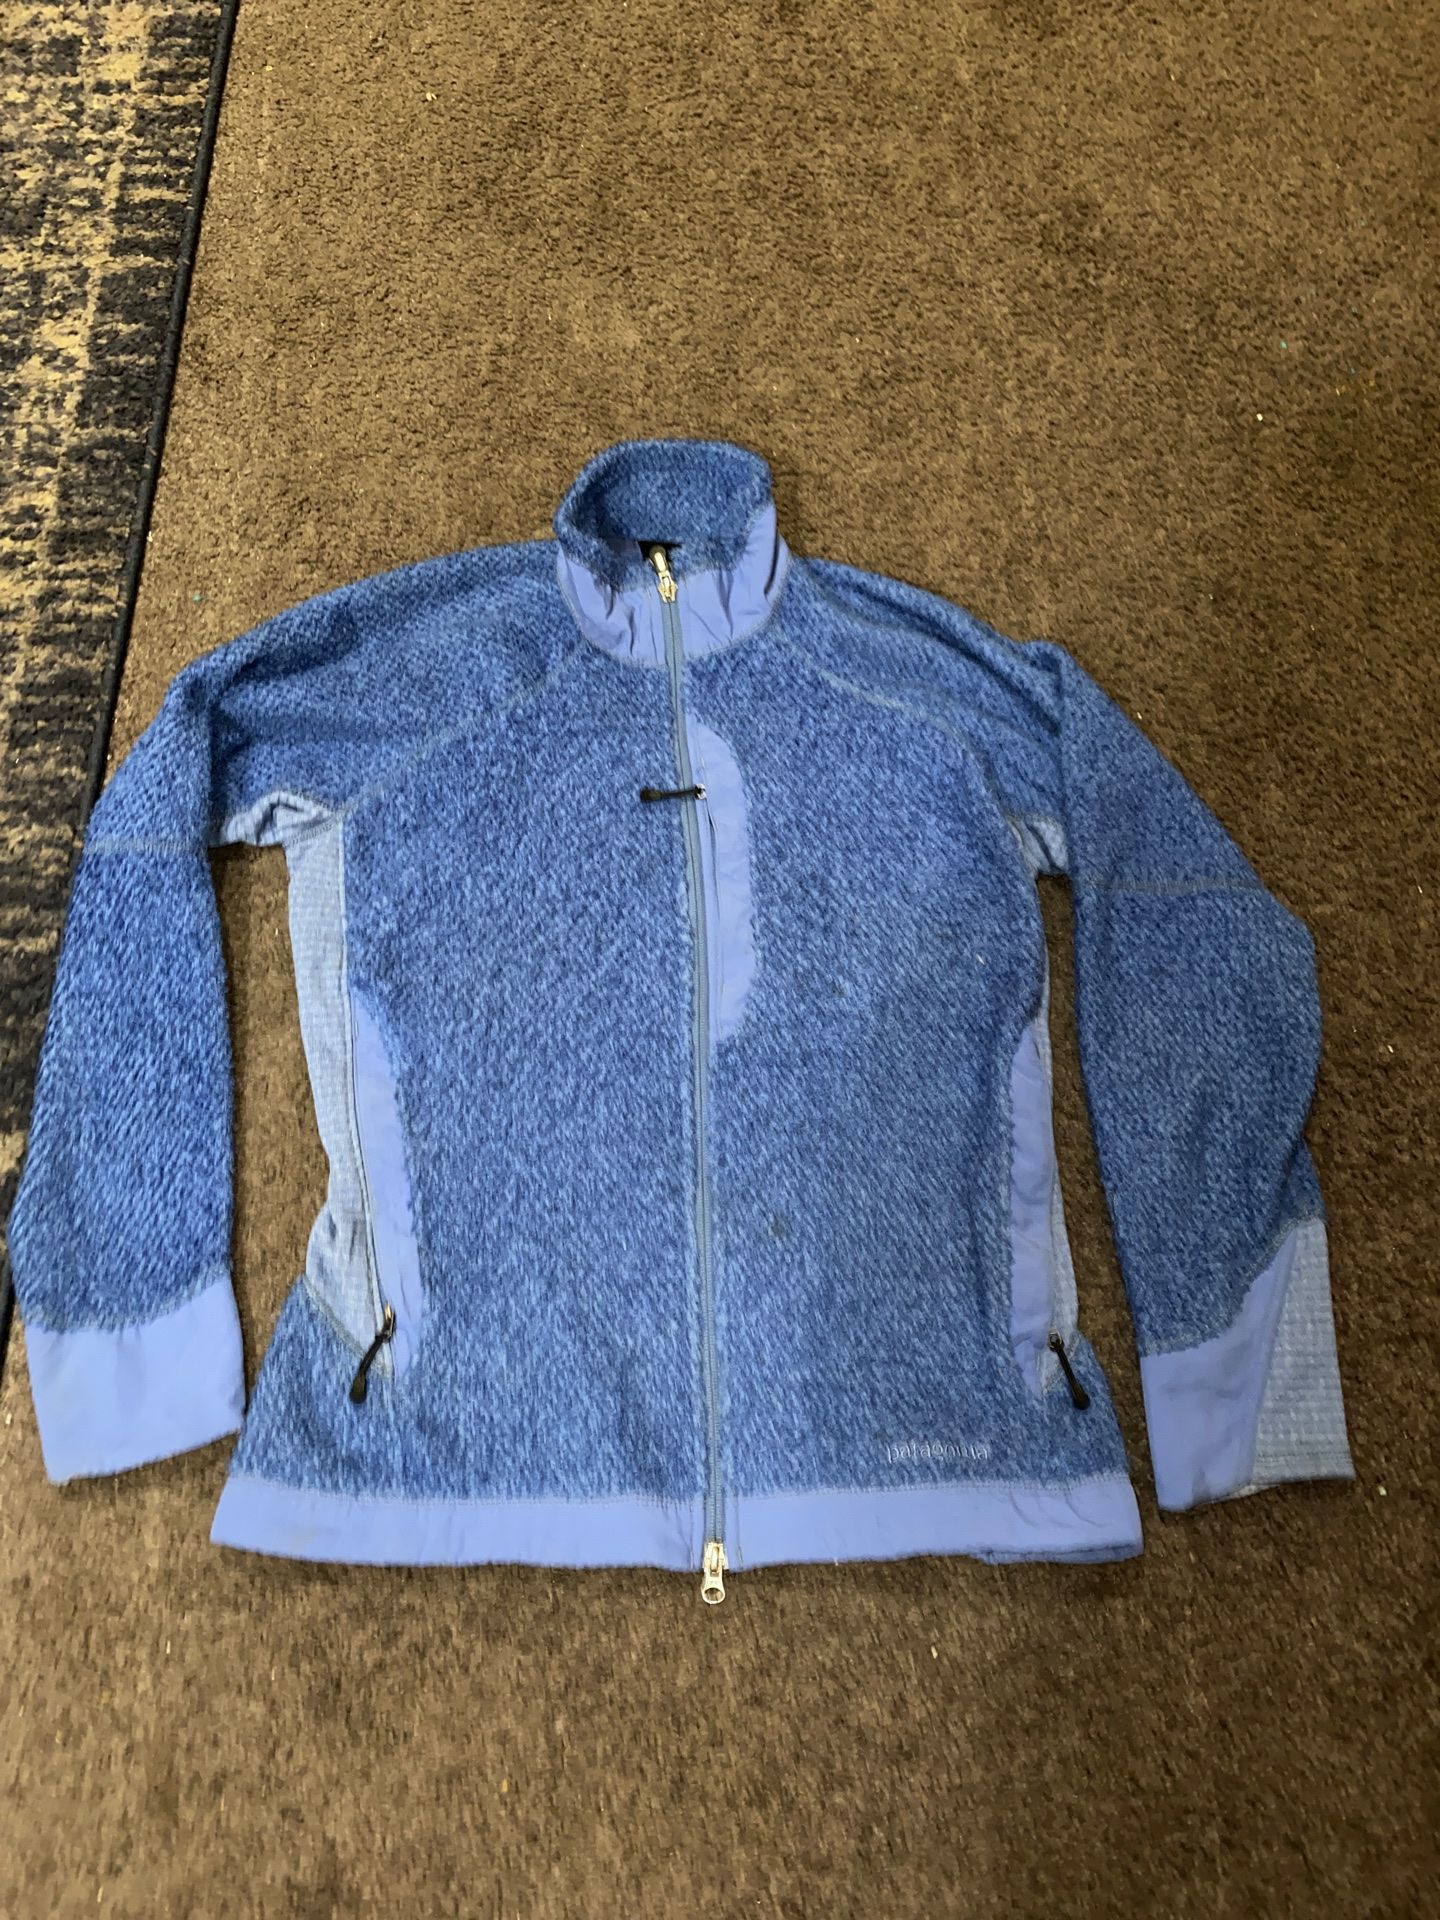 Women’s size Medium Patagonia Blue zip up jacket